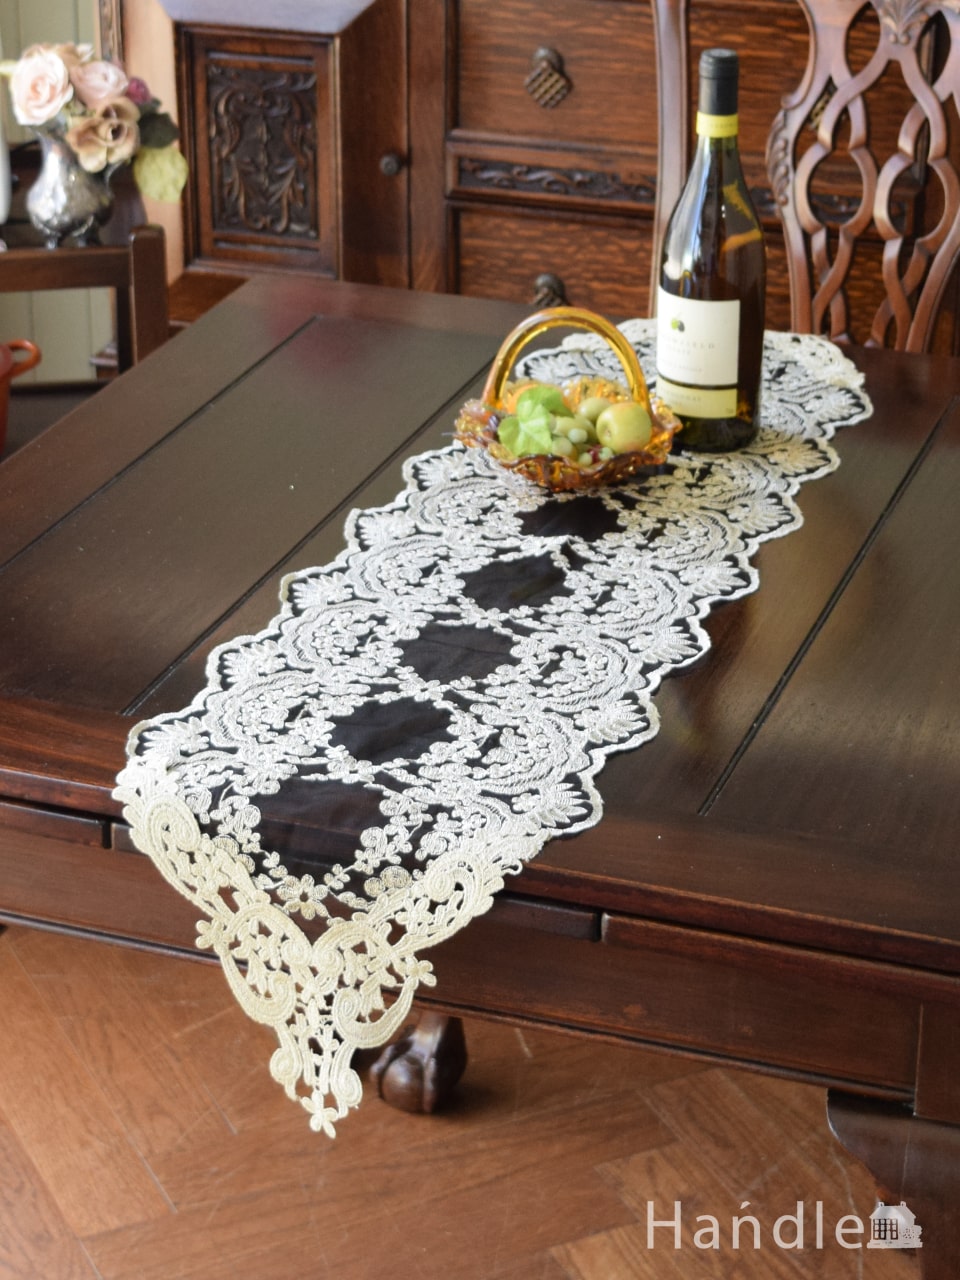 フレンチアンティーク調のテーブルランナー、華やかなお花の刺繍